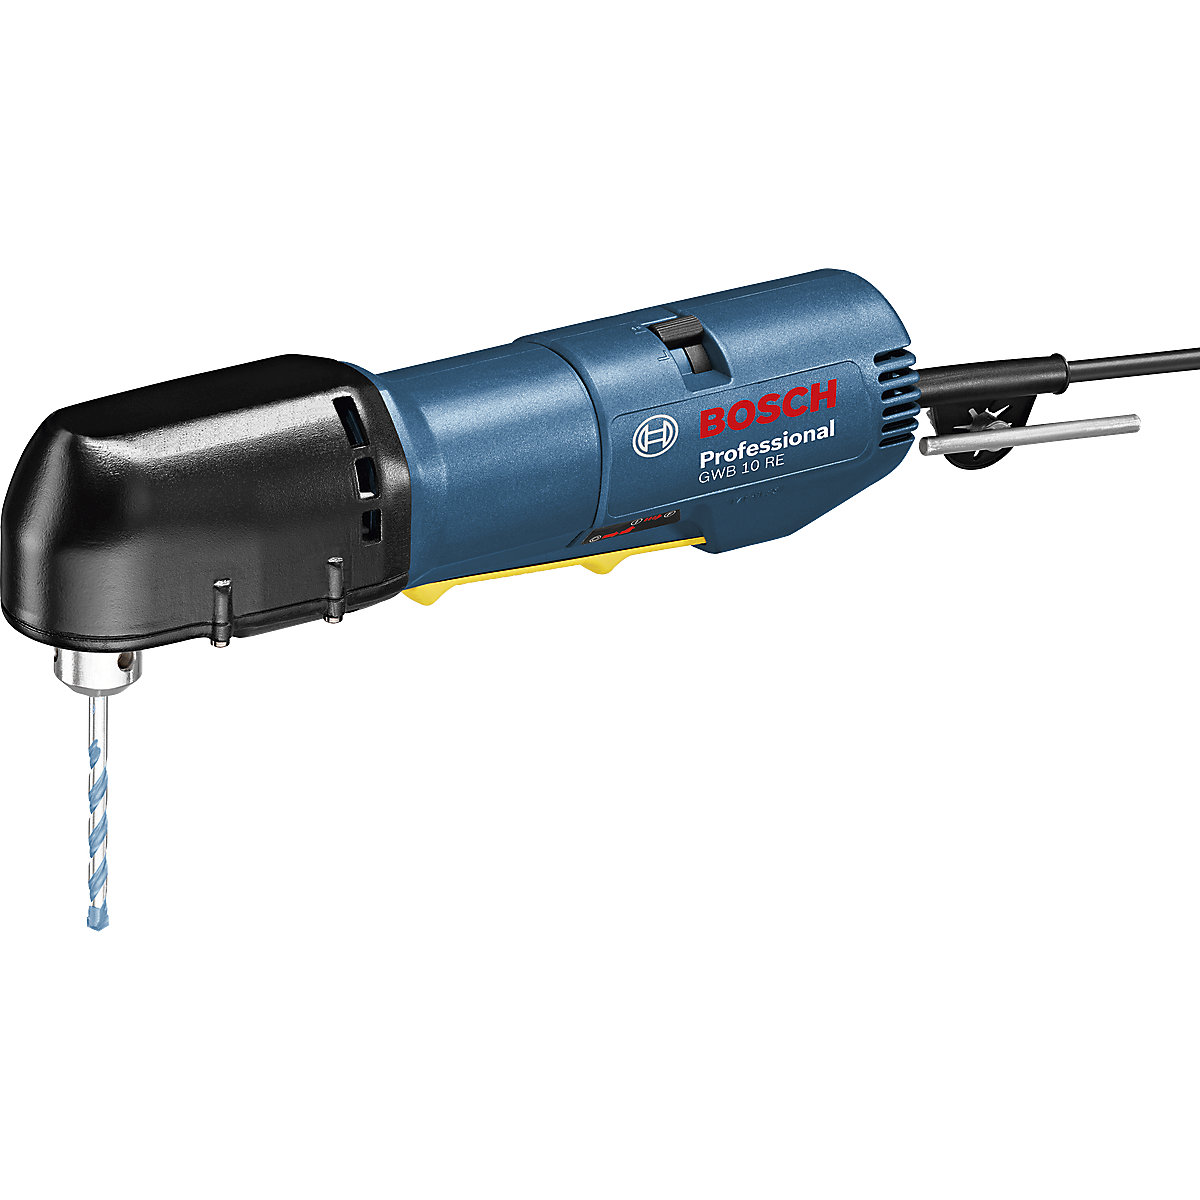 Taladradora angular GWB 10 RE Professional - Bosch